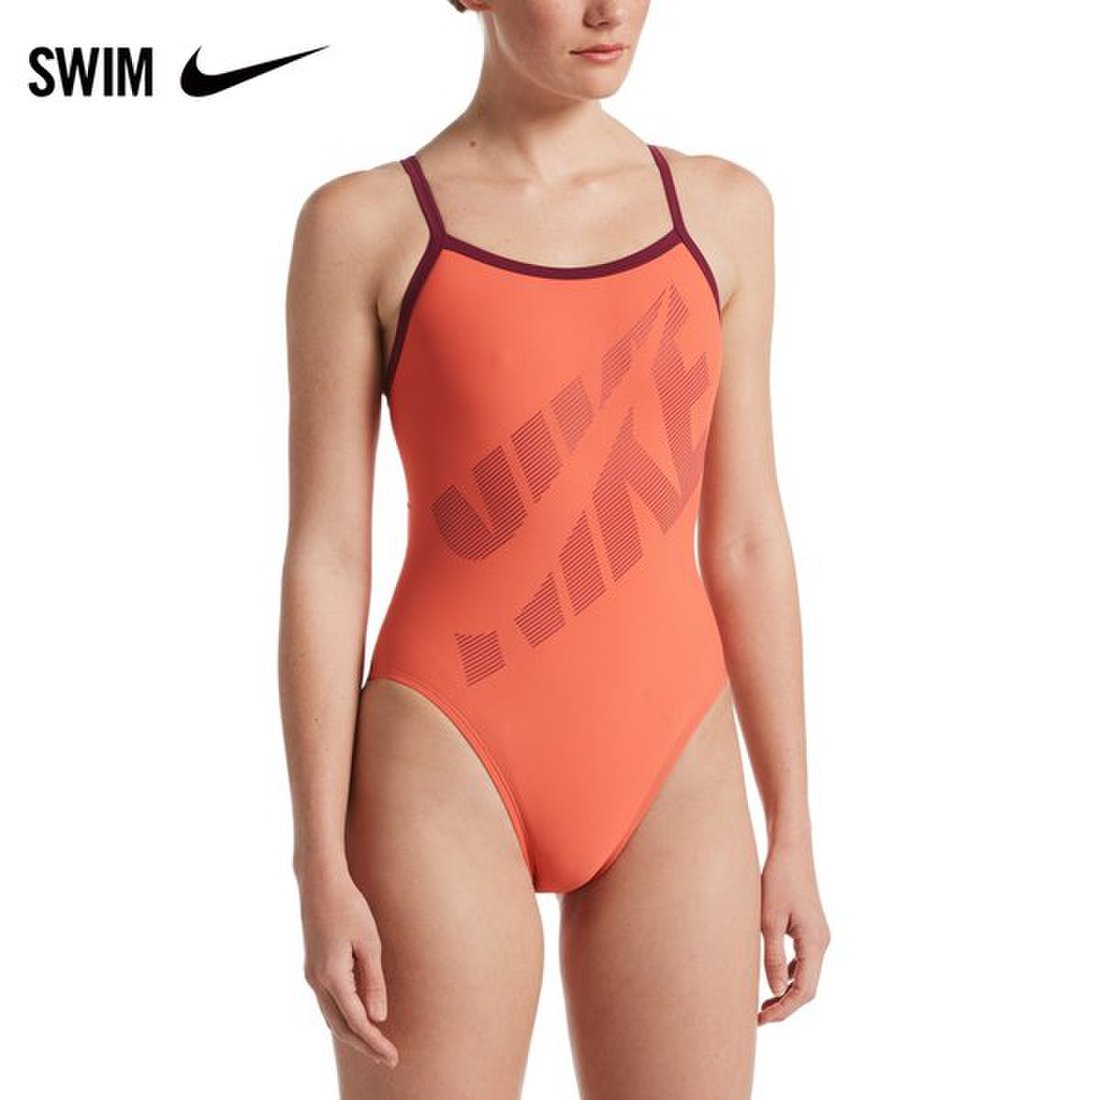 Купальник слитный женский Nike Swim NESSA007 оранжевый 40 EU